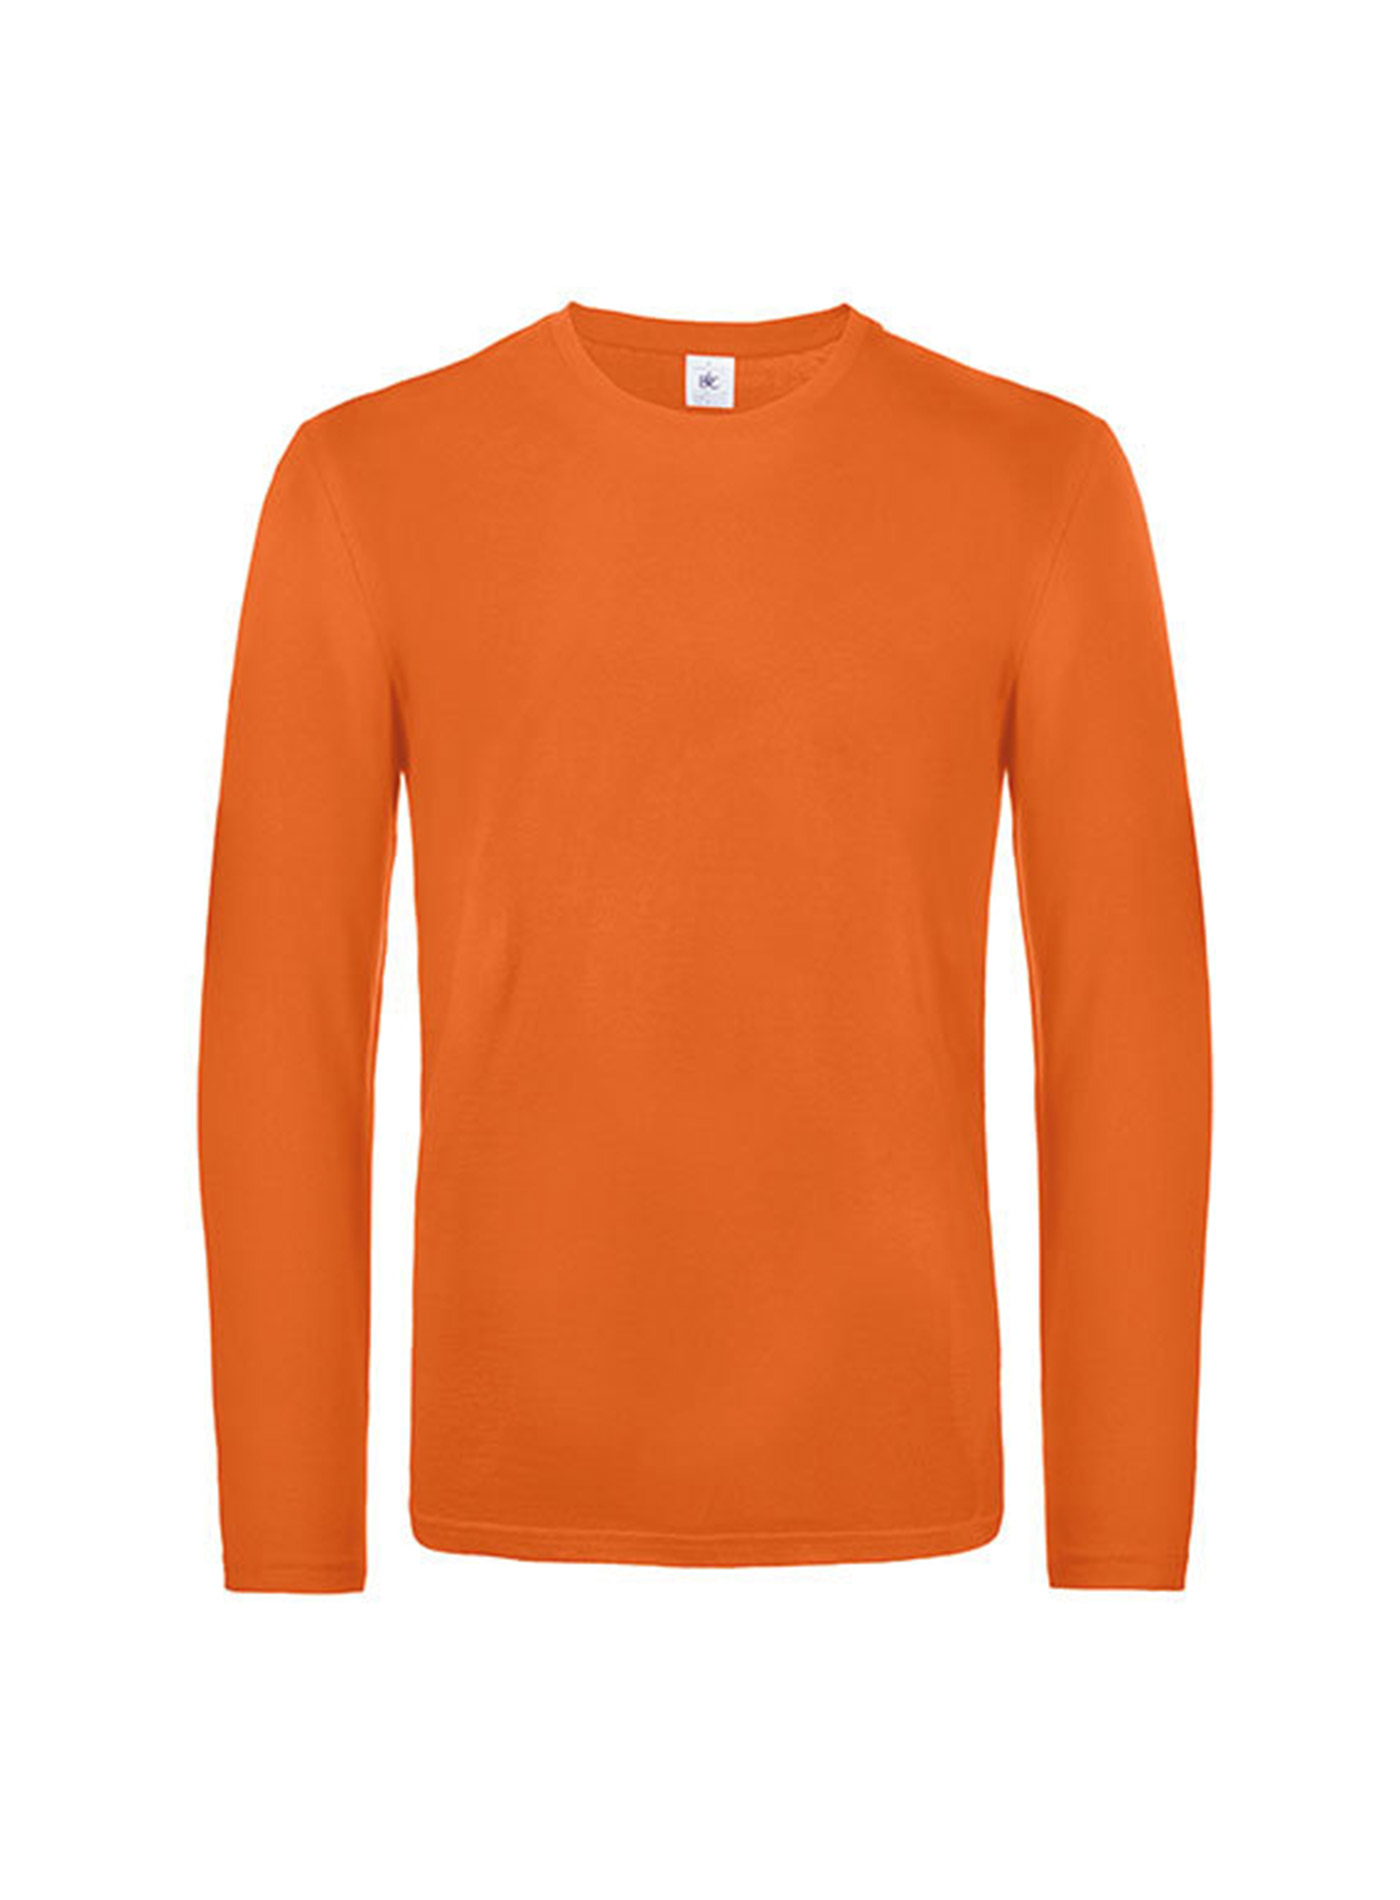 Pánské tričko s dlouhým rukávem B&C Collection - Oranžová L